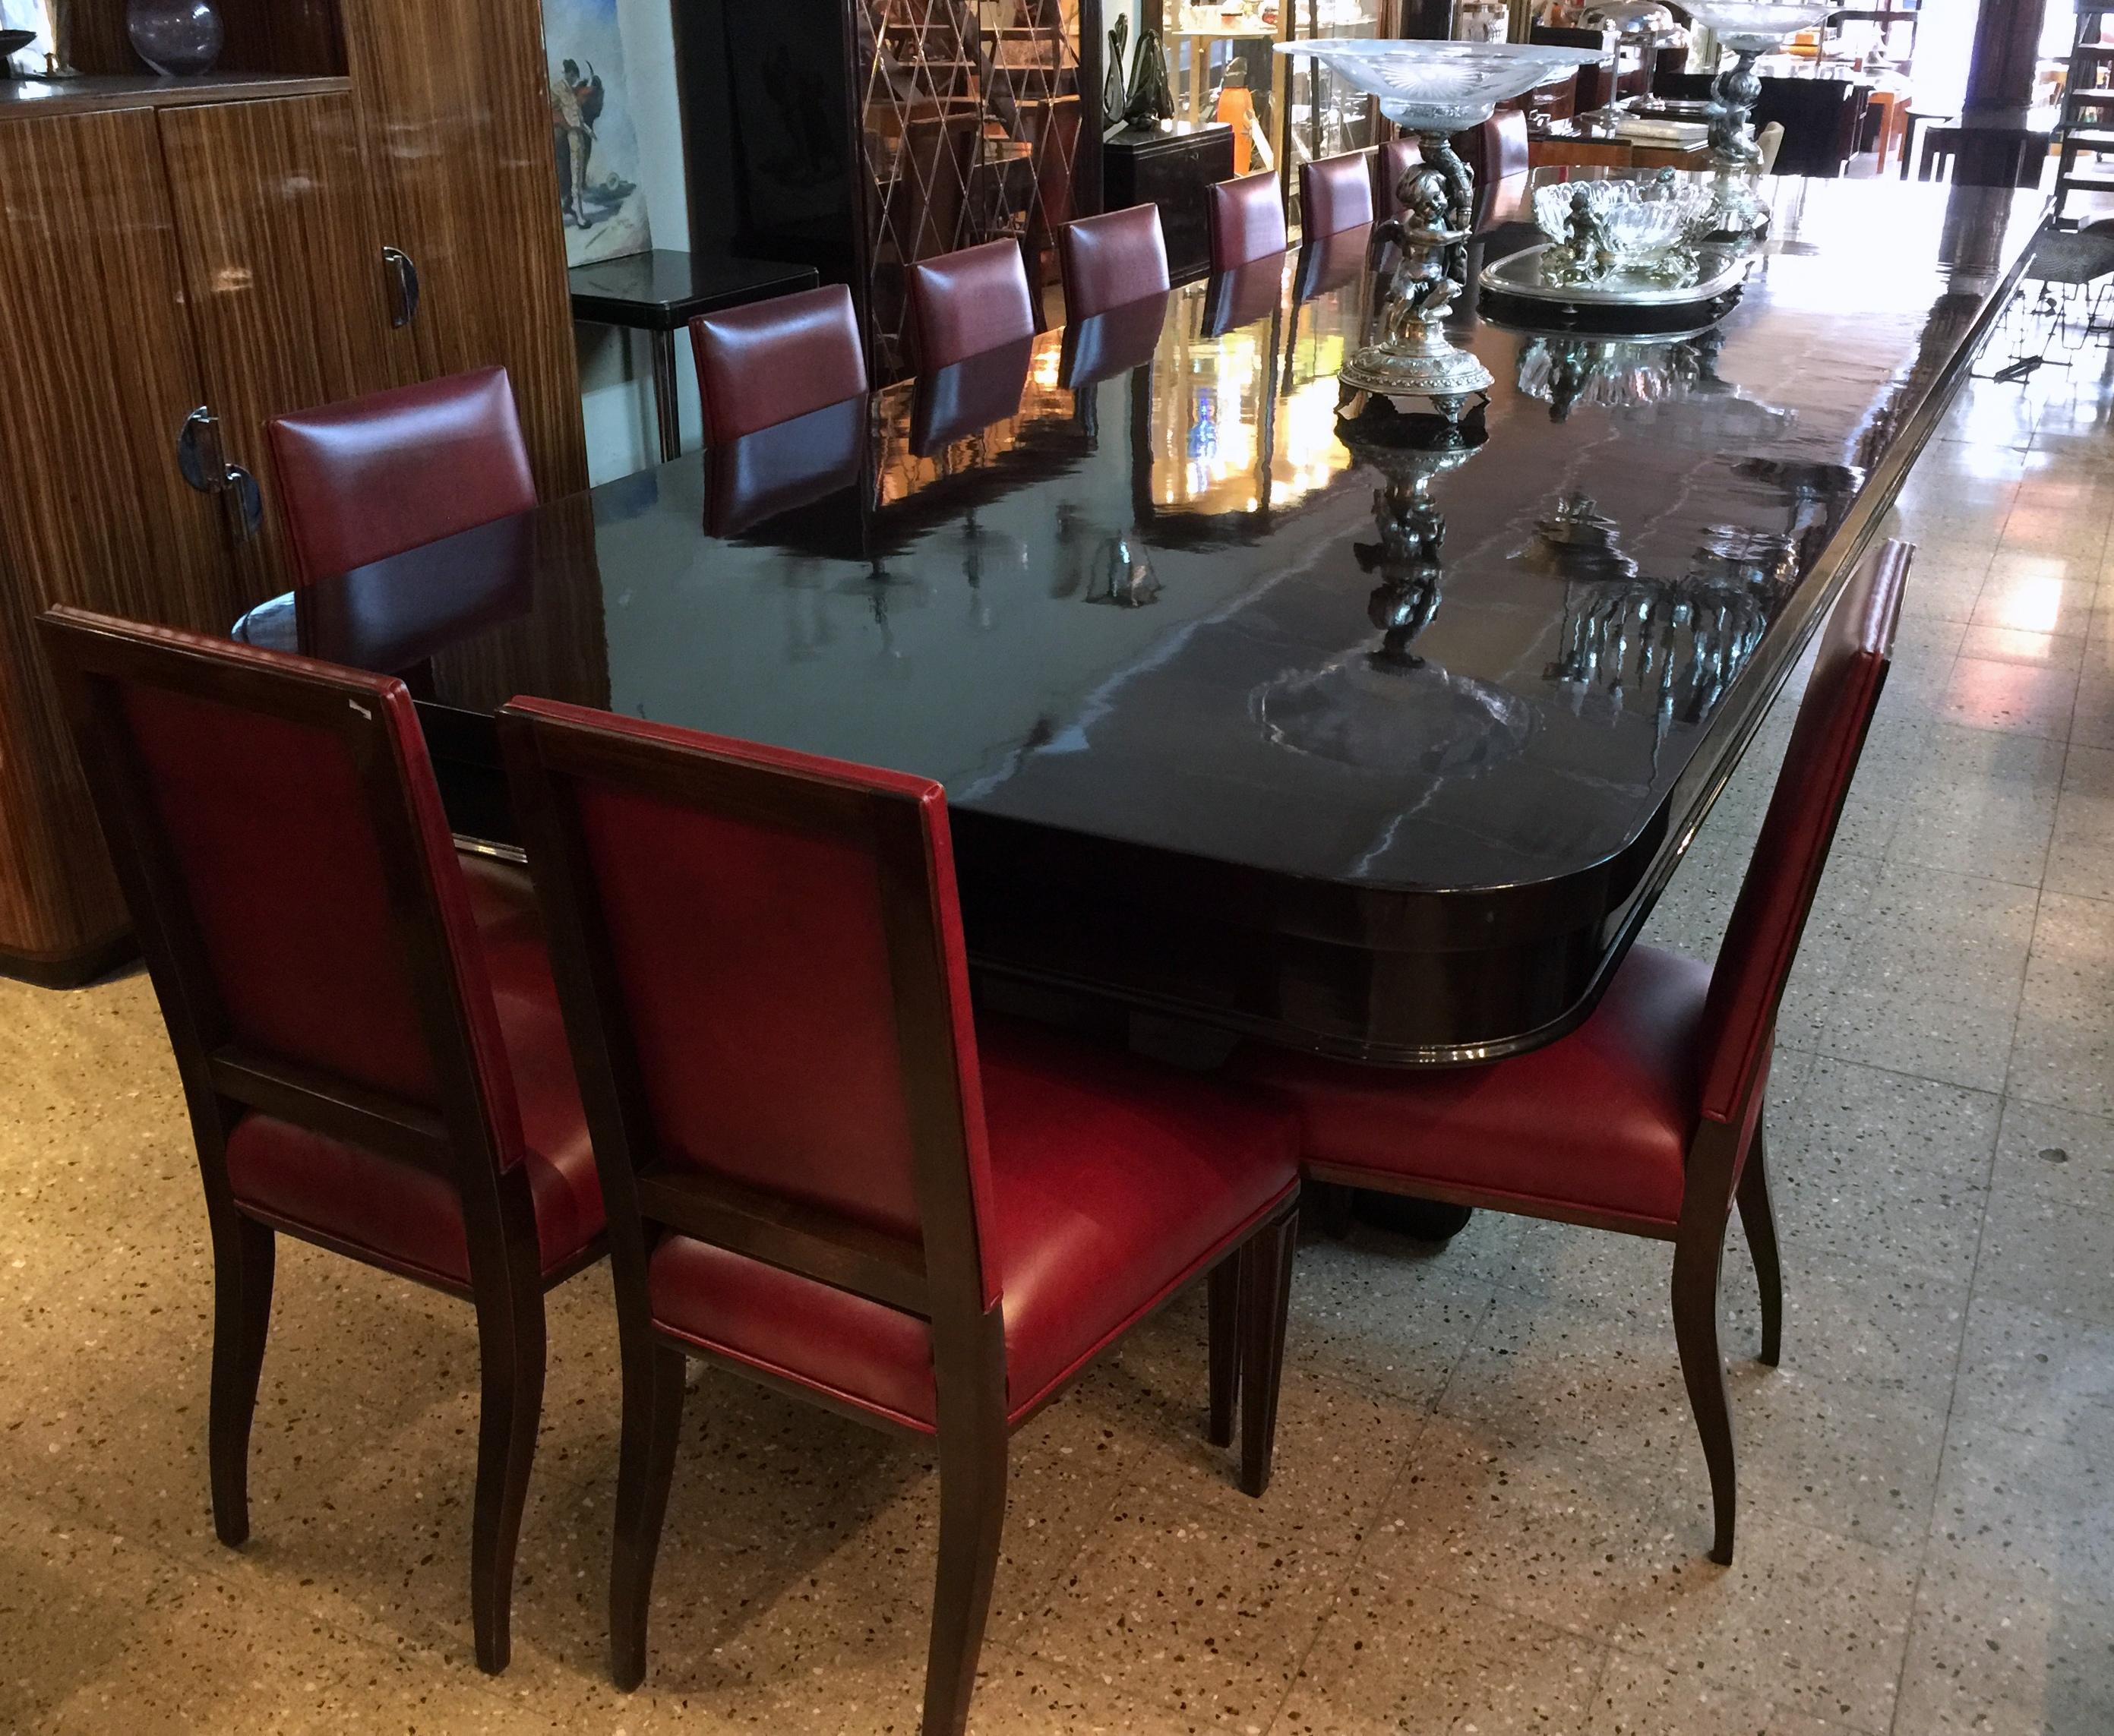 Tisch ist Stil Art Deco
Jahr 1930
Französisch.
Das Holz ist Walnusswurzel.
Ausführung: Polyurethan-Lack.
Die Tischplatte ist ein Stück tief: 551 cm ist erstaunlich. 
In der Tabelle können Sie sitzen: 12 Personen sehr bequem oder 24 Personen ist